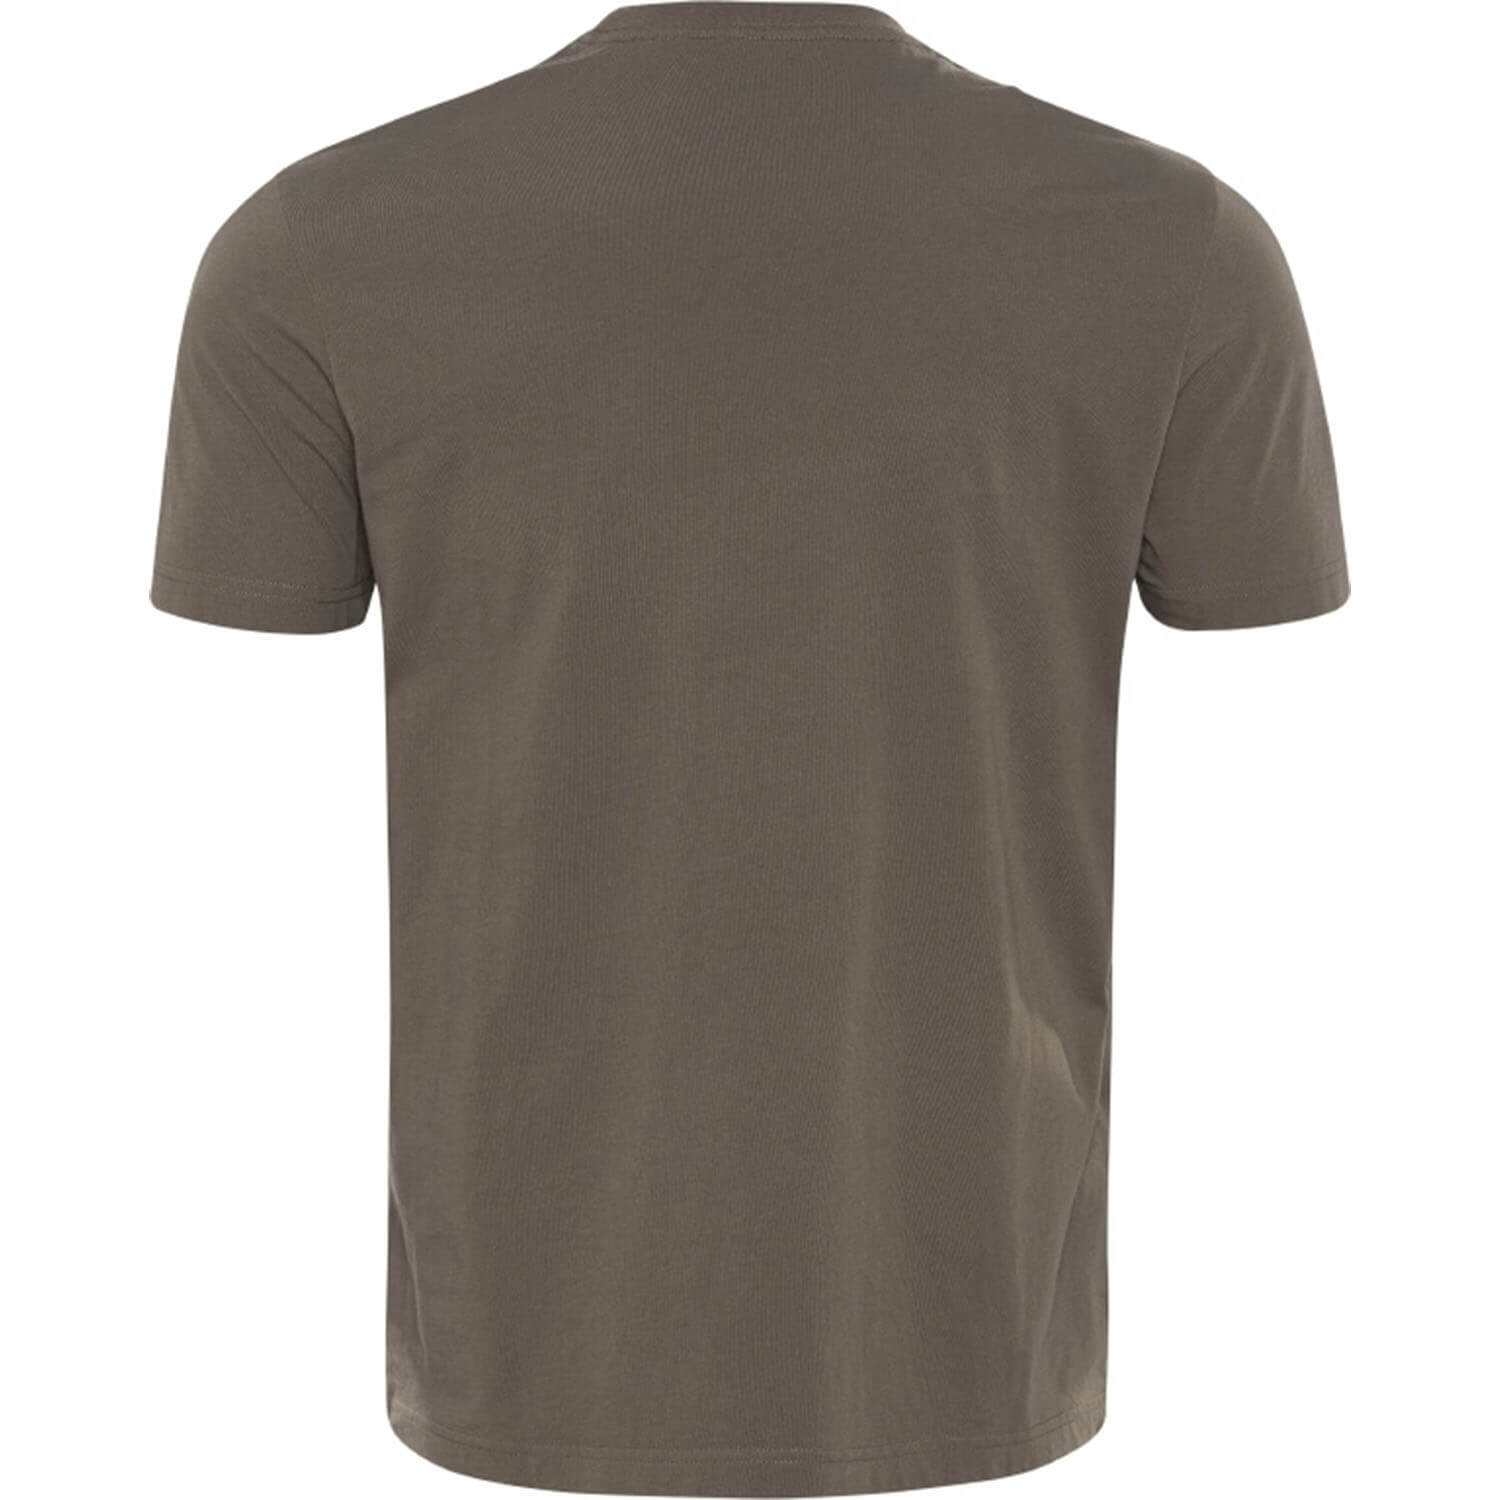 Härkila T-shirt Core (brown)